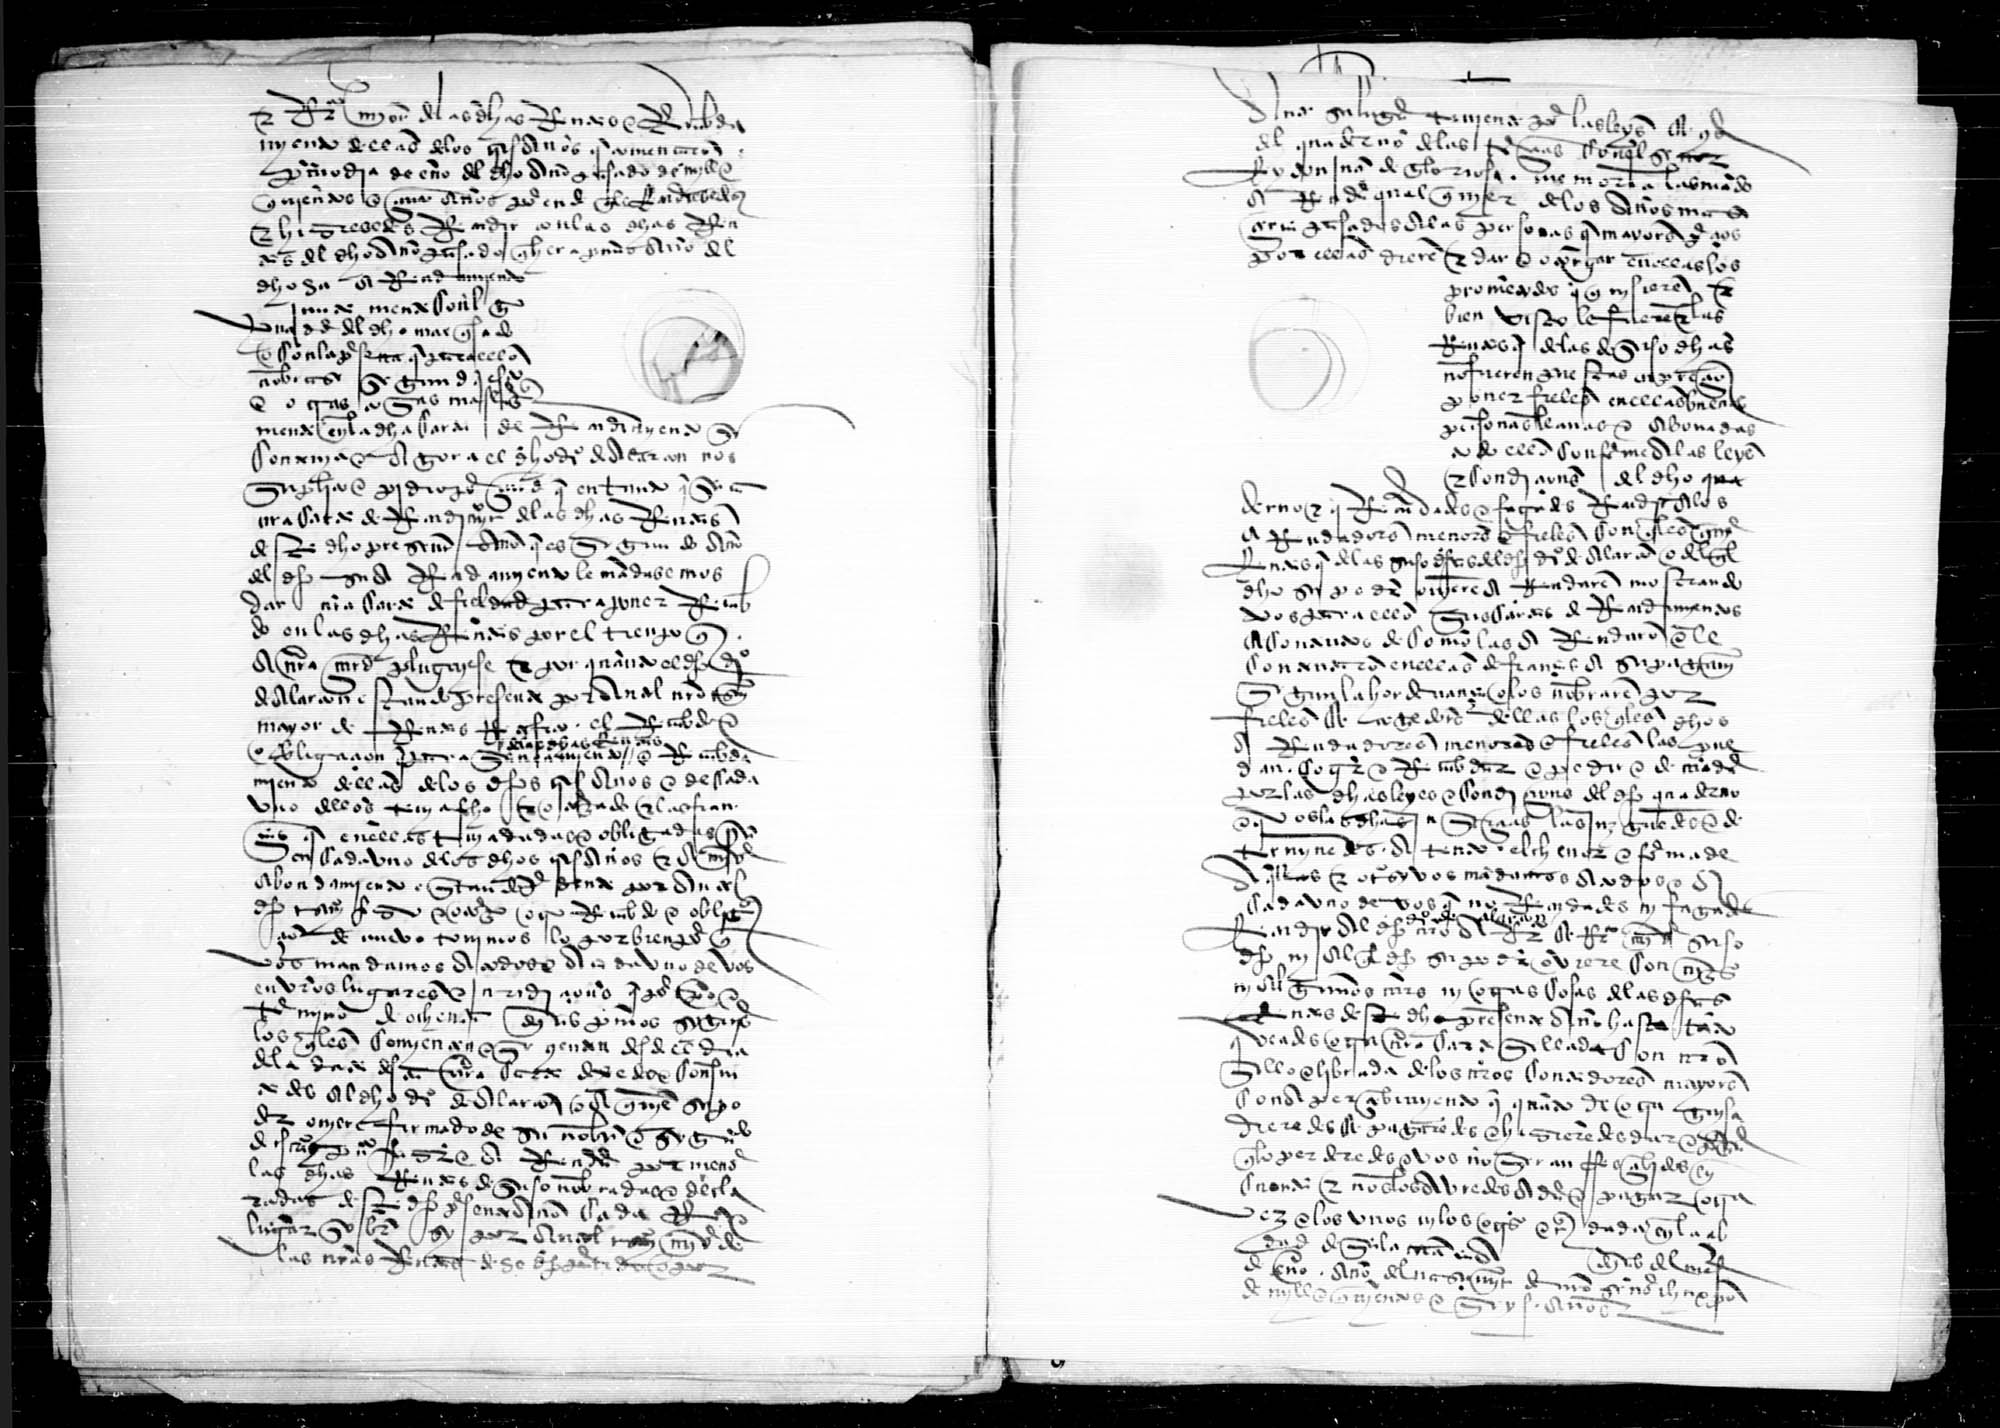 Carta de fieldad a Diego de Alarcón, vecino de Ocaña, arrendador de las tercias de marquesado de Villena de los años 1505-1507, para que pueda comenzar a cobrar esa renta mientras se le libra carta de recudimiento.